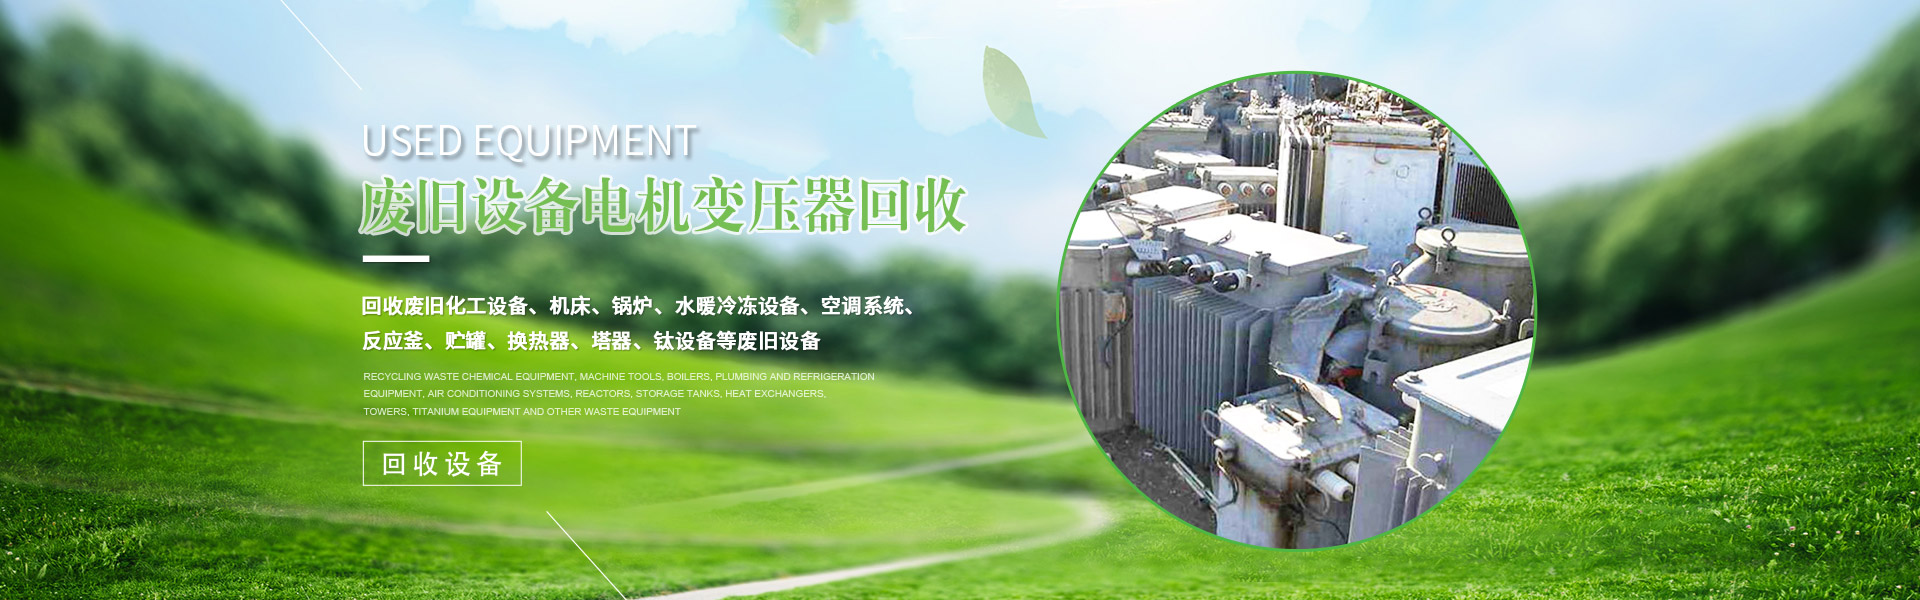 上海閎博再生資源回收有限公司